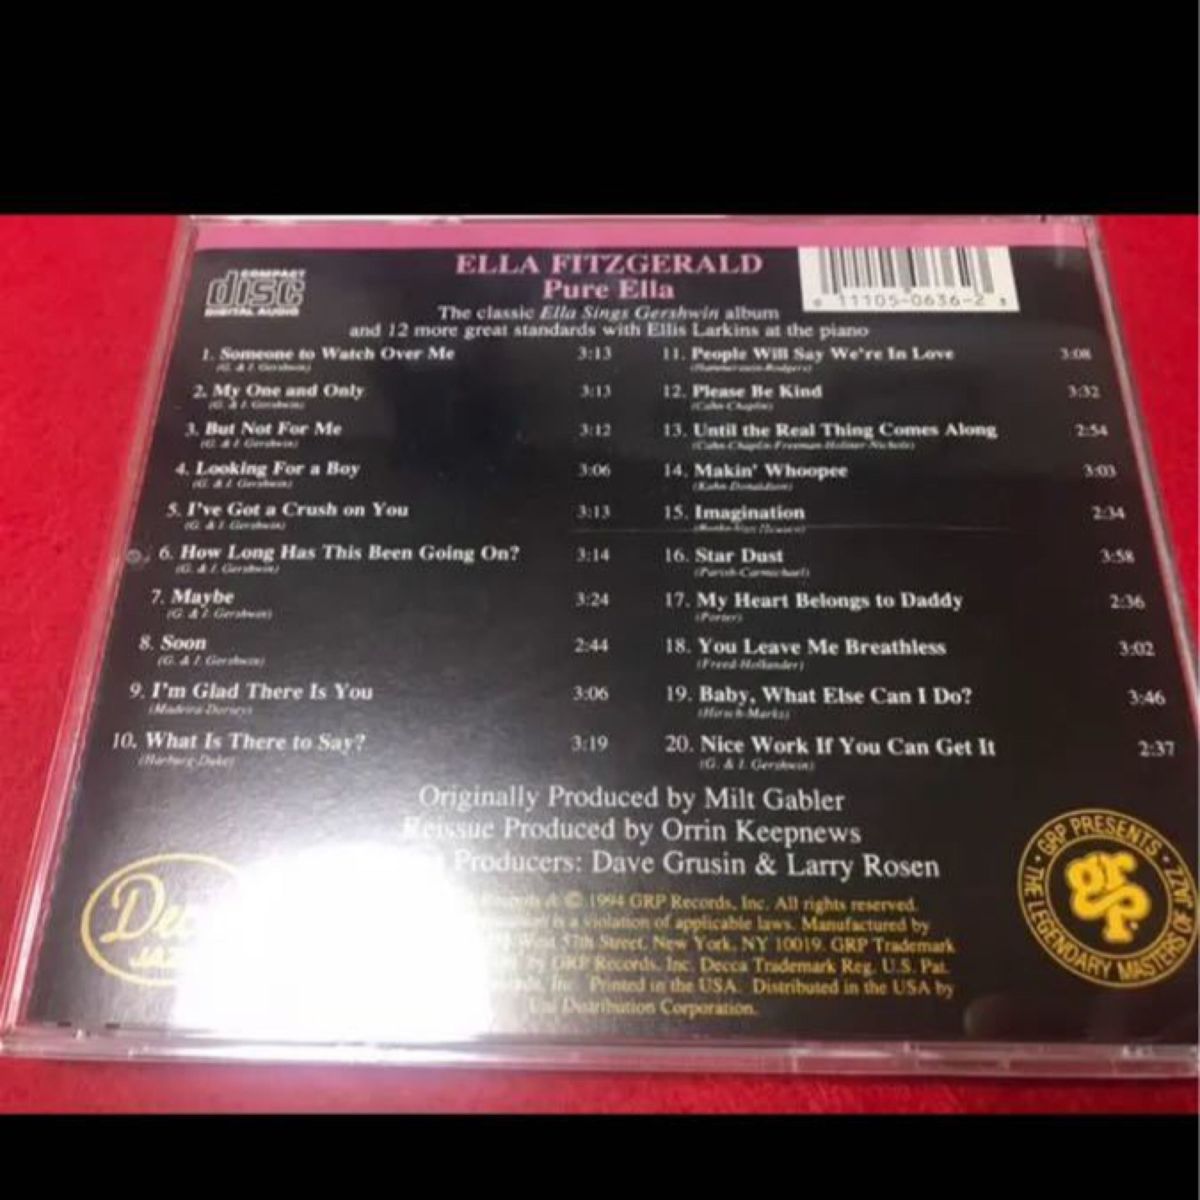 CD JAZZ 名盤 ジャズ Standard Ella Fitzgerald